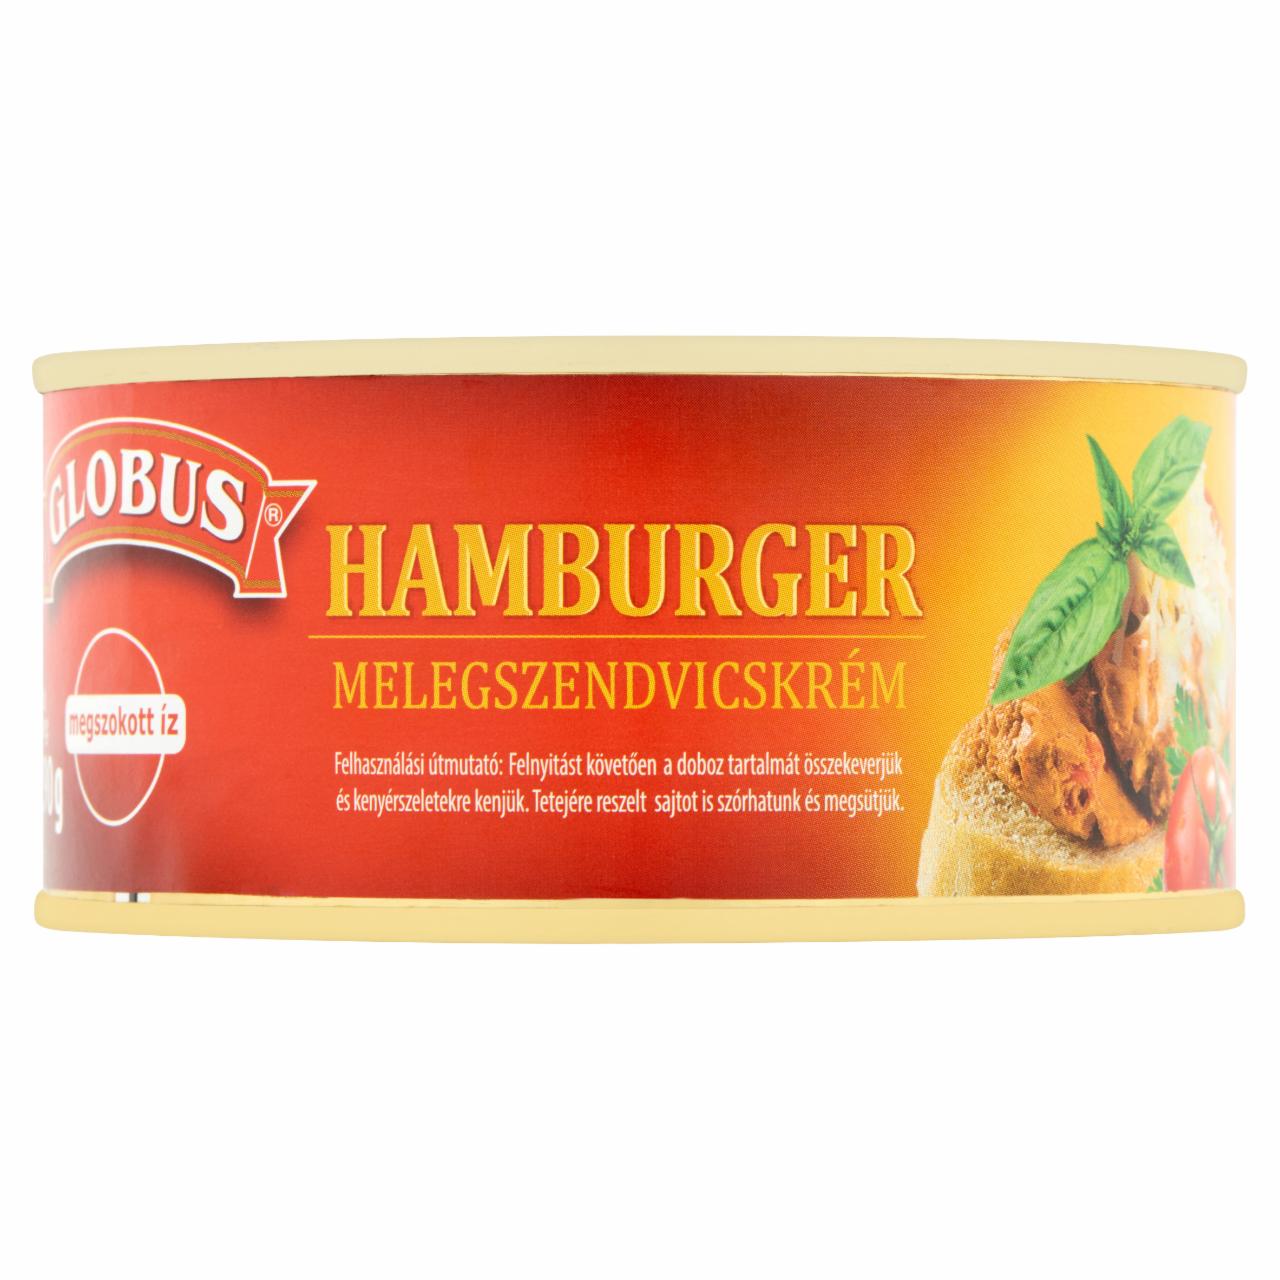 Képek - Hamburger melegszendvicskrém Globus